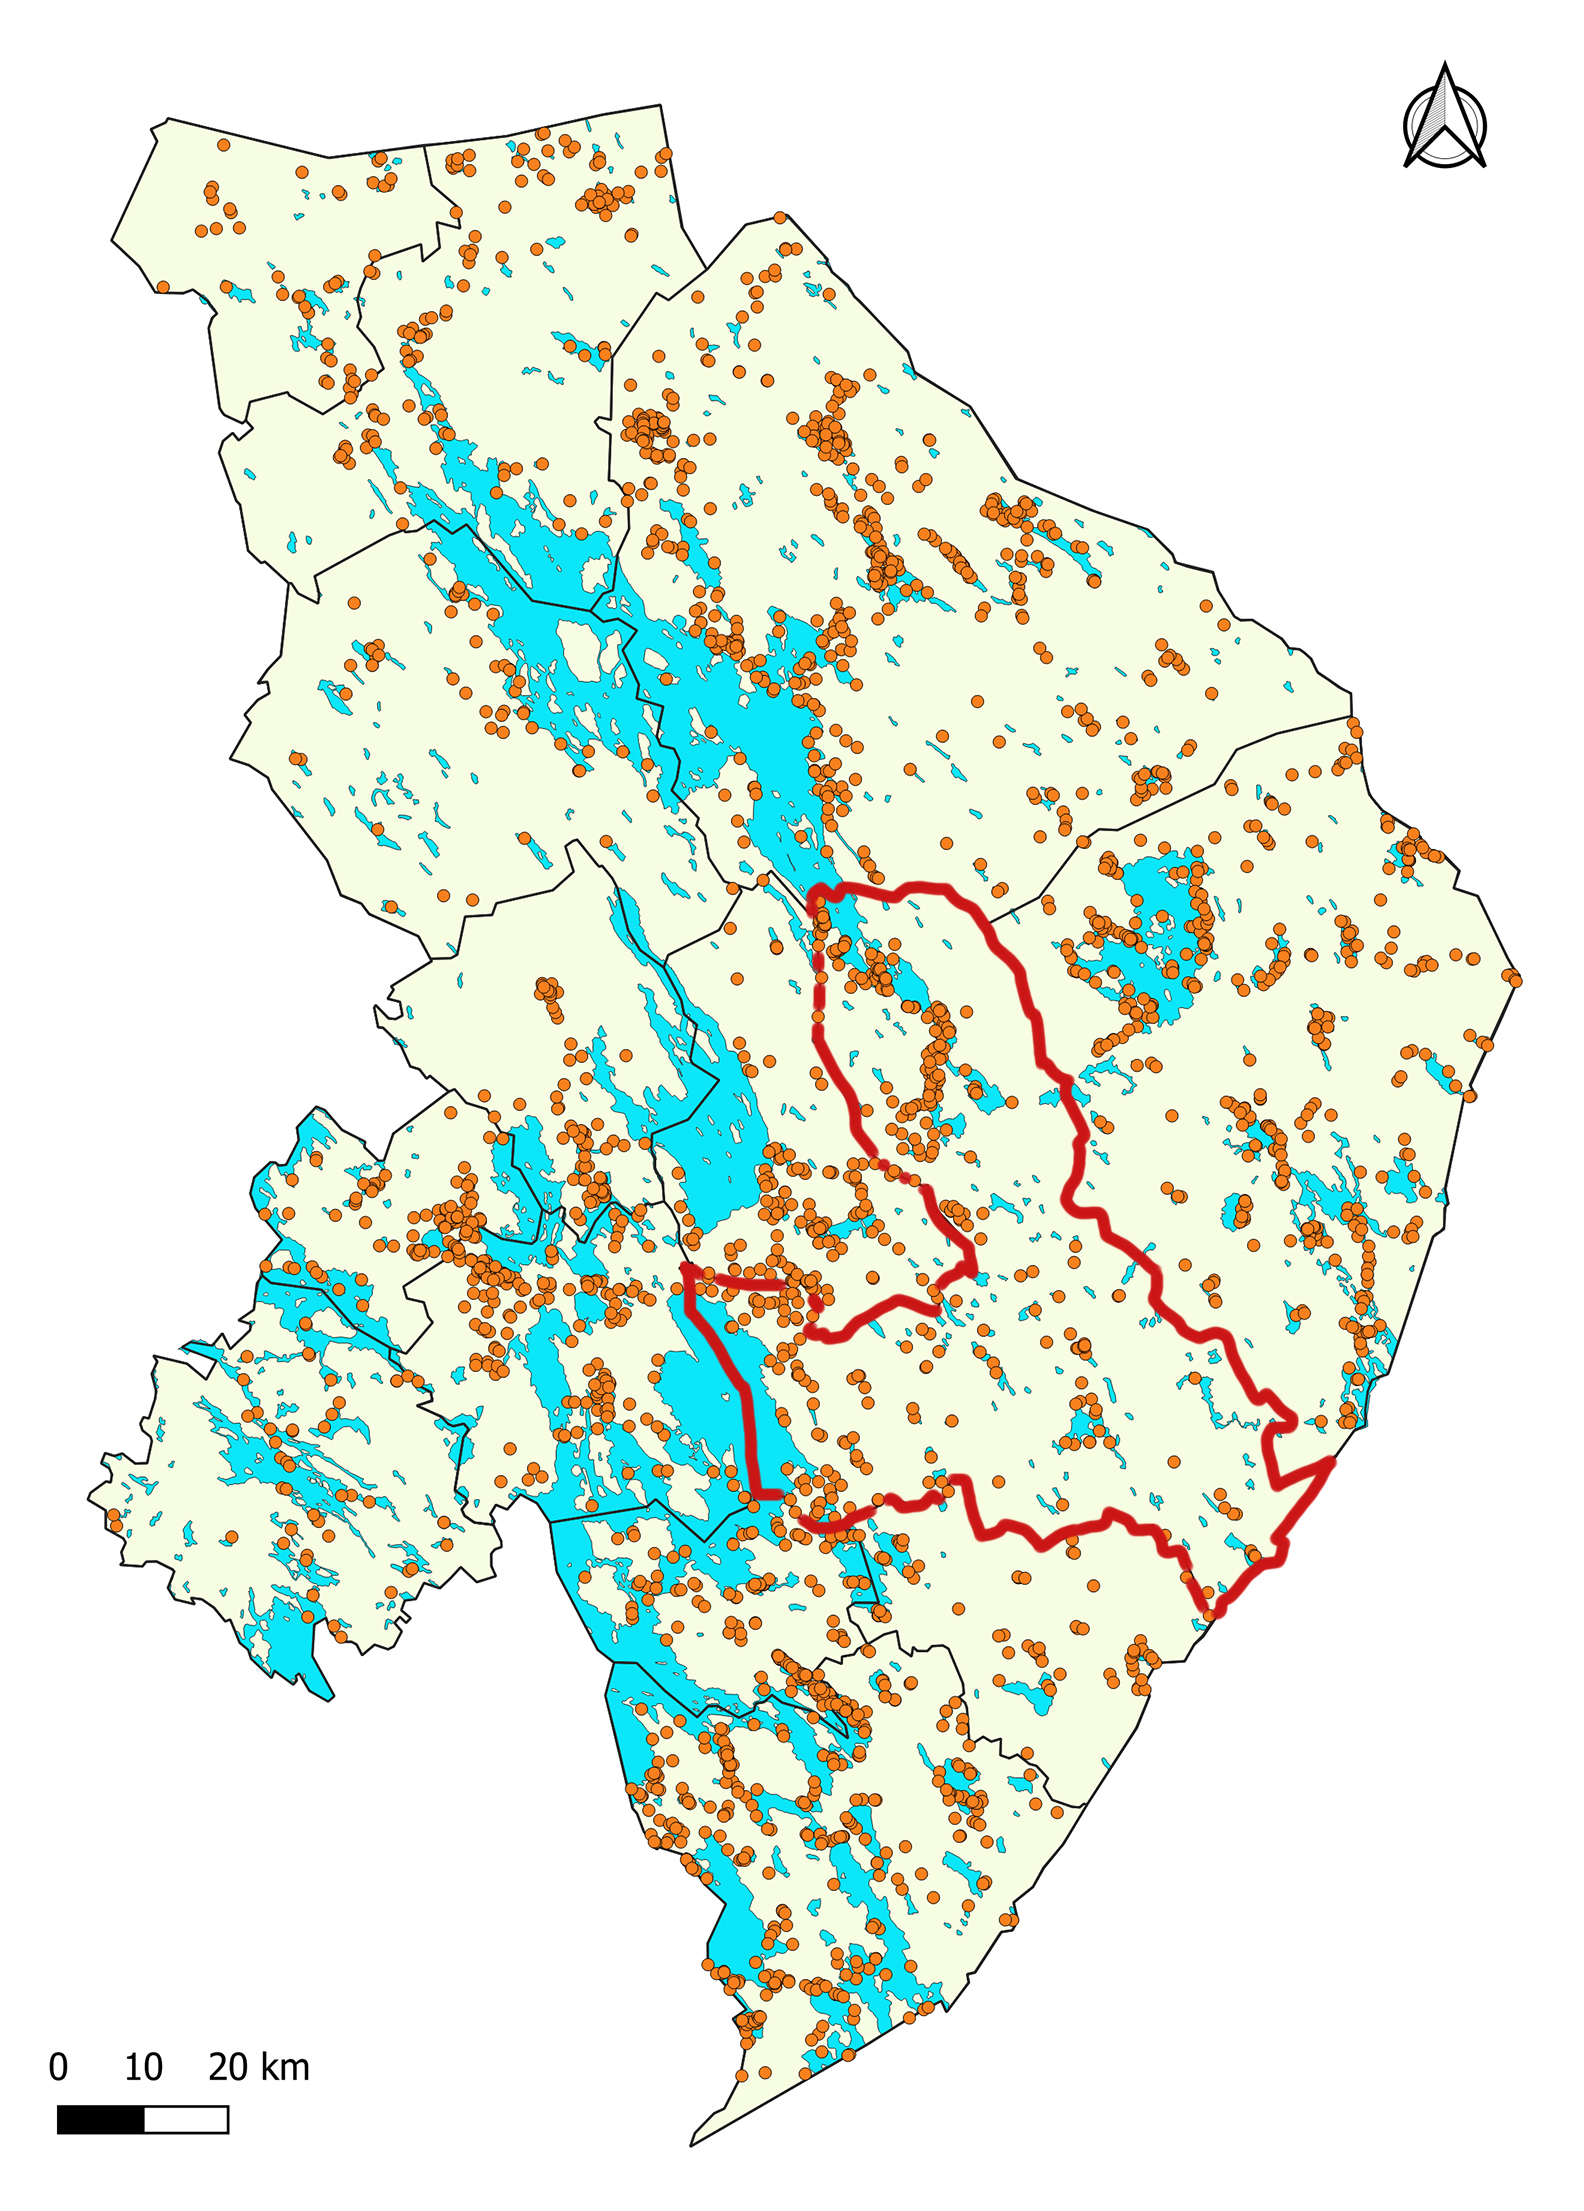 Ilomantsin alueen kiinteät muinaisjäännökset.. Kartassa Joensuun kunnan rajat on piirretty punaisella, muut kunnat näkyvät mustin rajoin. Oranssit pallot kertovat löydöspaikoista. Vesistöt on merkitty sinisellä.